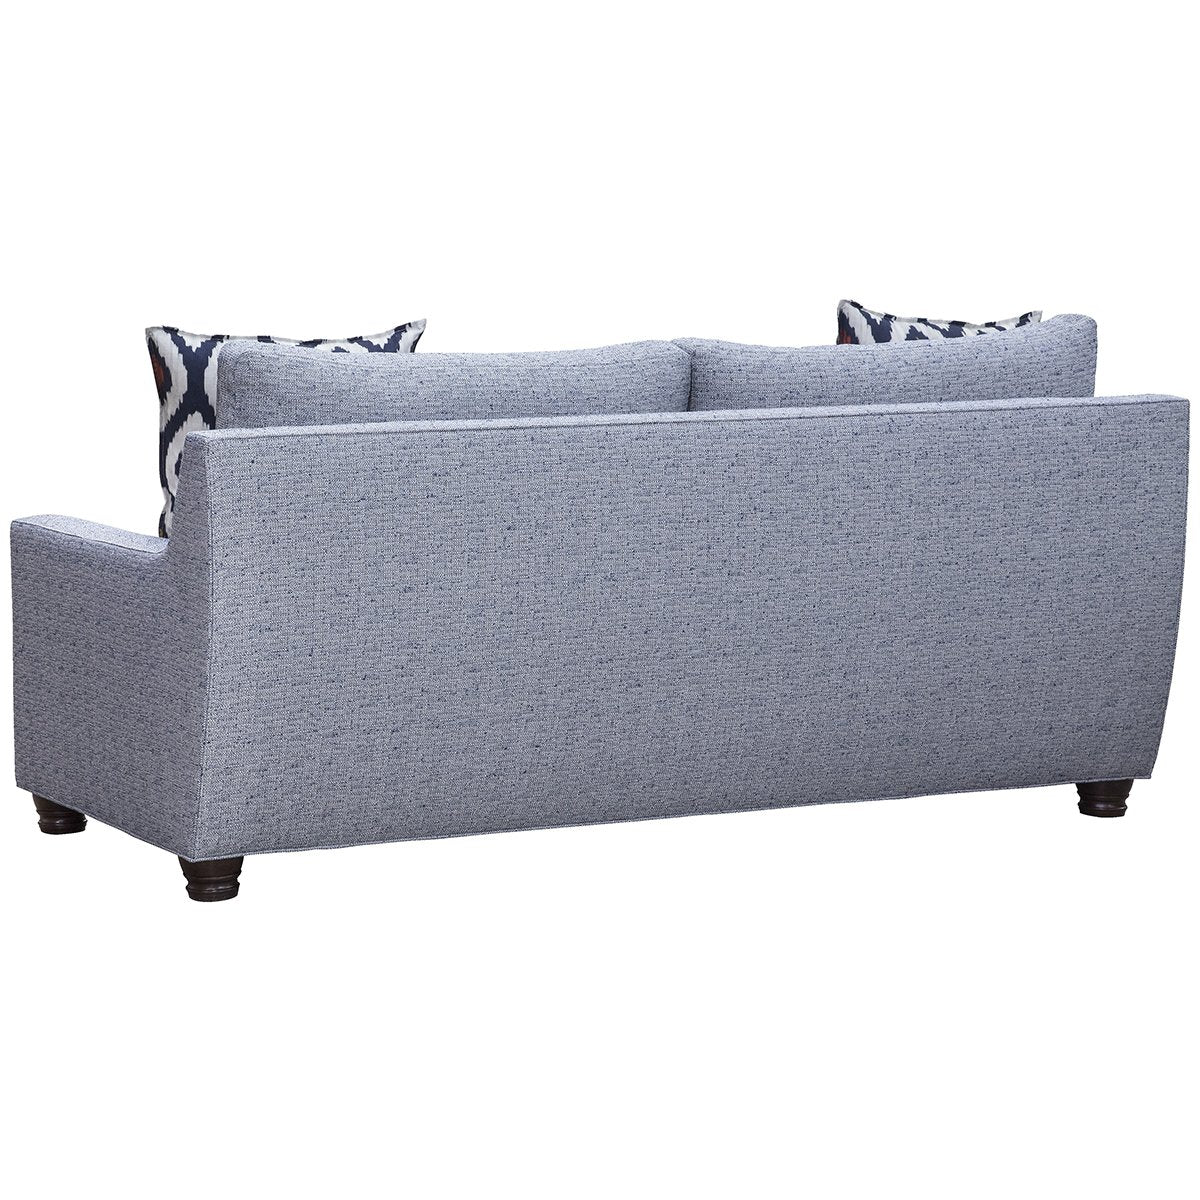 Vanguard Furniture Fairgrove Mid Sleep Sofa